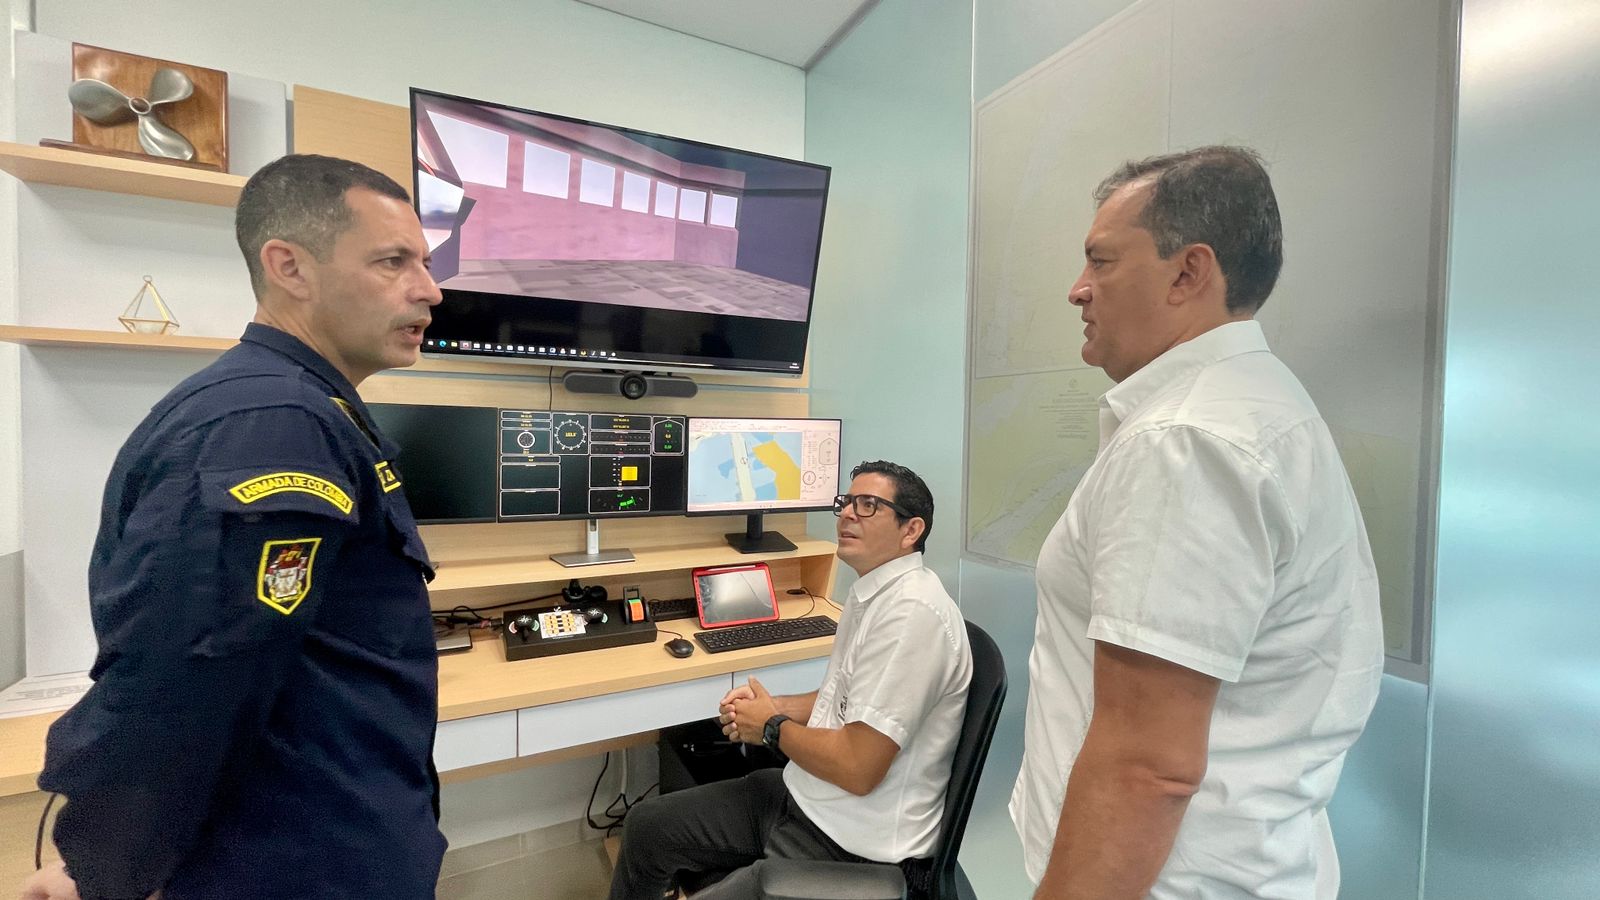 Pruebas del simulador en las instalaciones de la empresa “Pilotos del puerto de Barranquilla